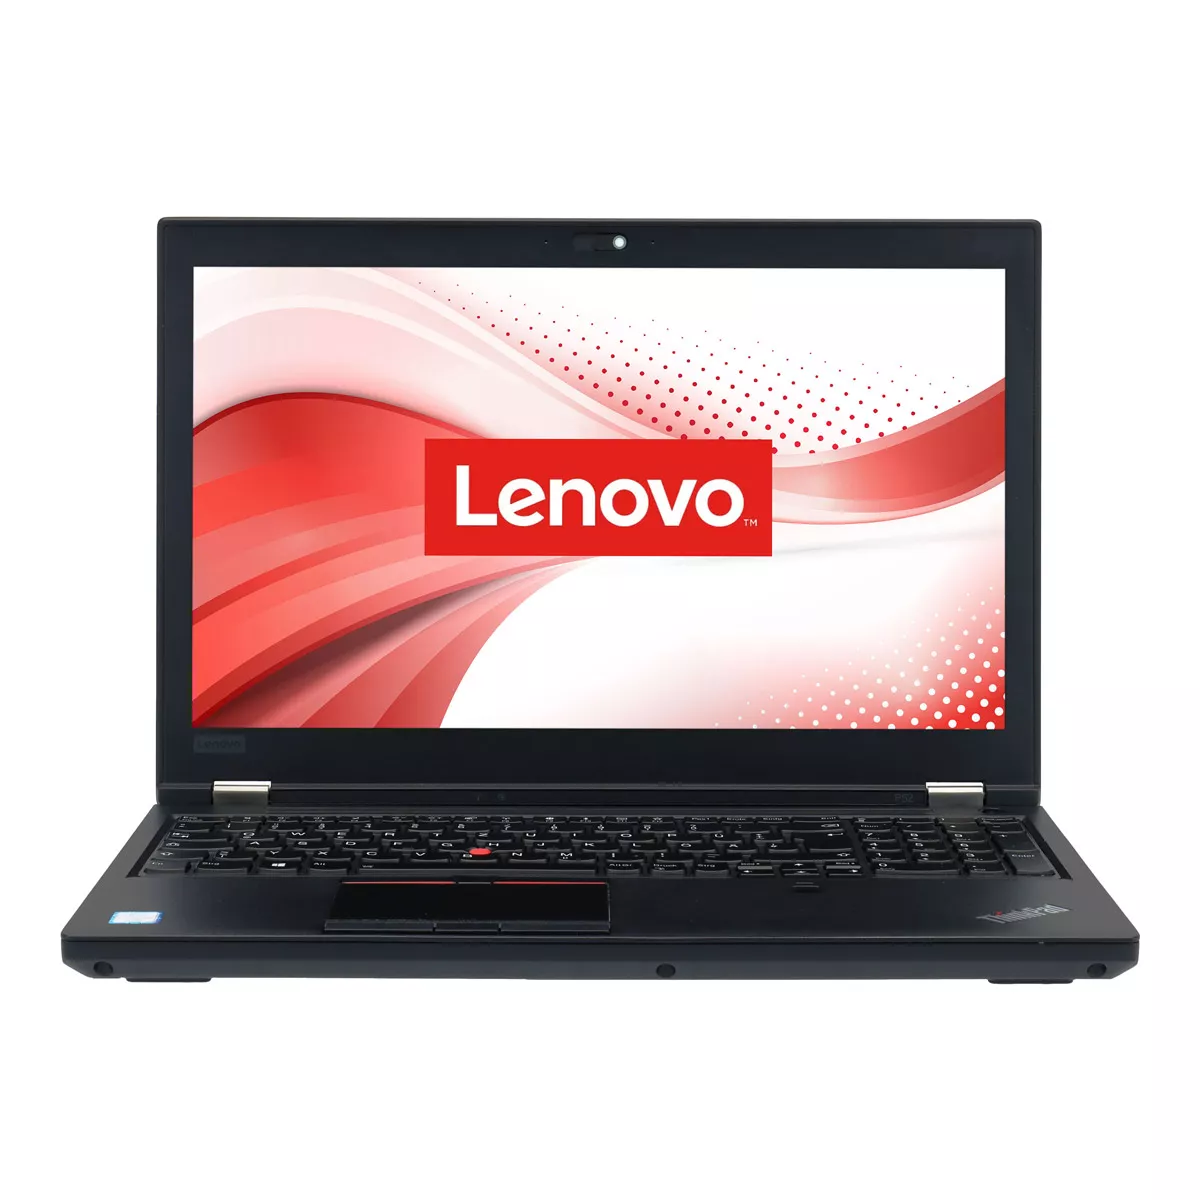 Lenovo ThinkPad P52 Core i7 8750H nVidia Quadro P1000M 16 GB 1 TB M.2 SSD Webcam A